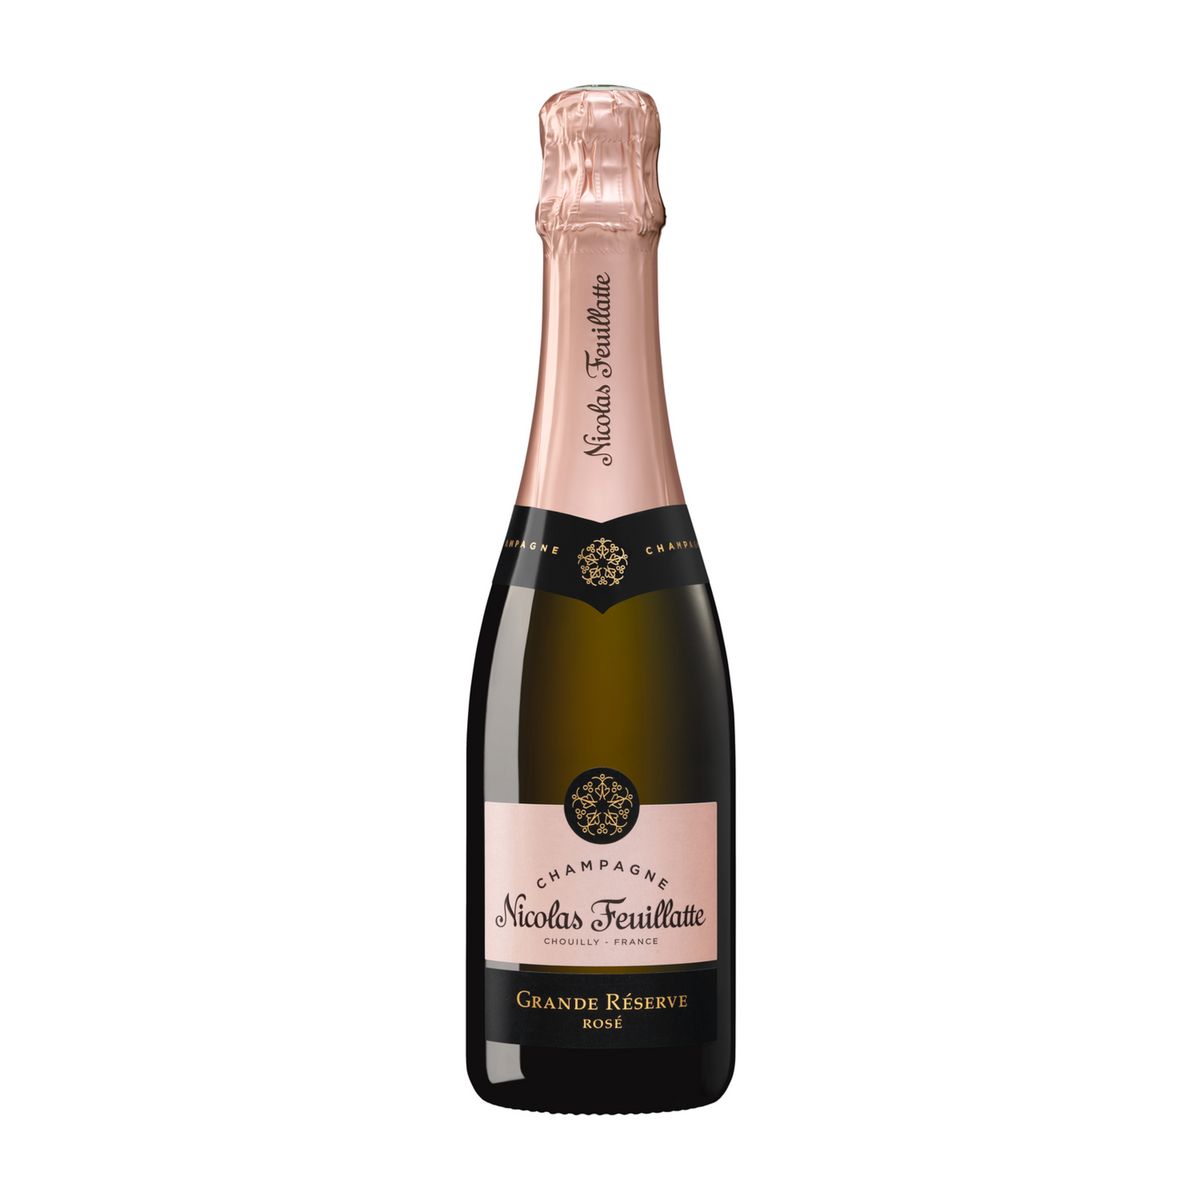 NICOLAS FEUILLATTE AOP Champagne rosé 37,5cl